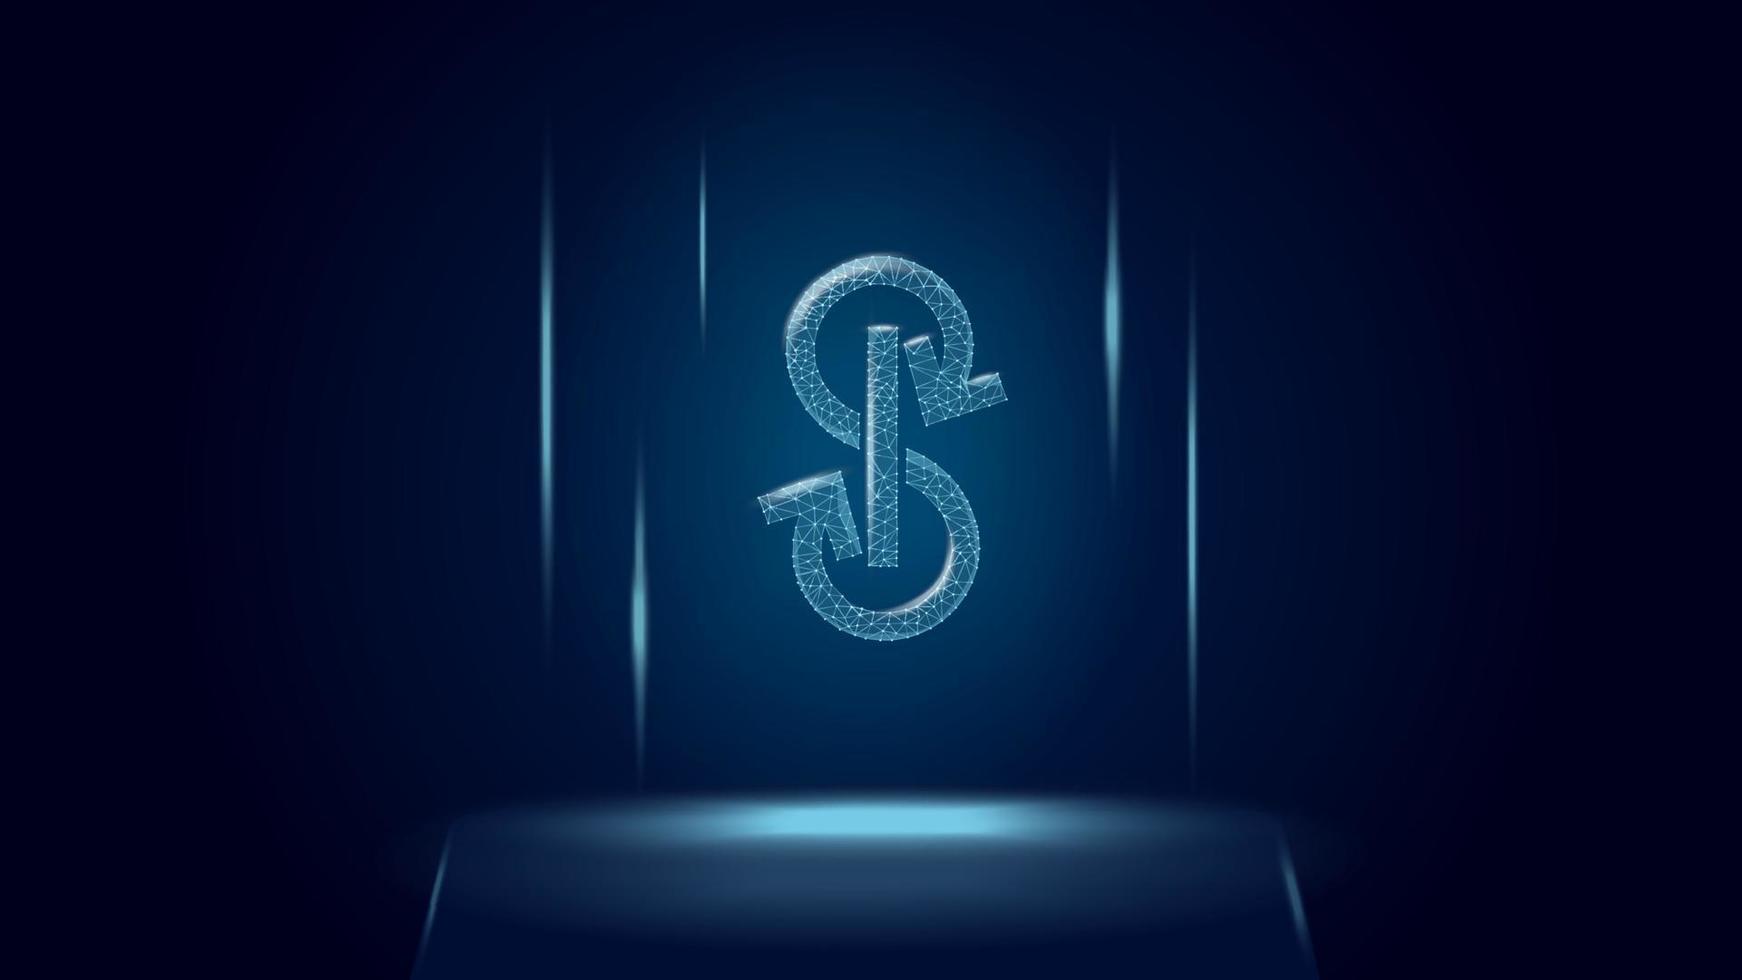 yearn.finance yfi token símbolo del sistema defi sobre el pedestal. icono del logotipo de criptomoneda. programas de finanzas descentralizadas. ilustración vectorial para sitio web o banner. vector